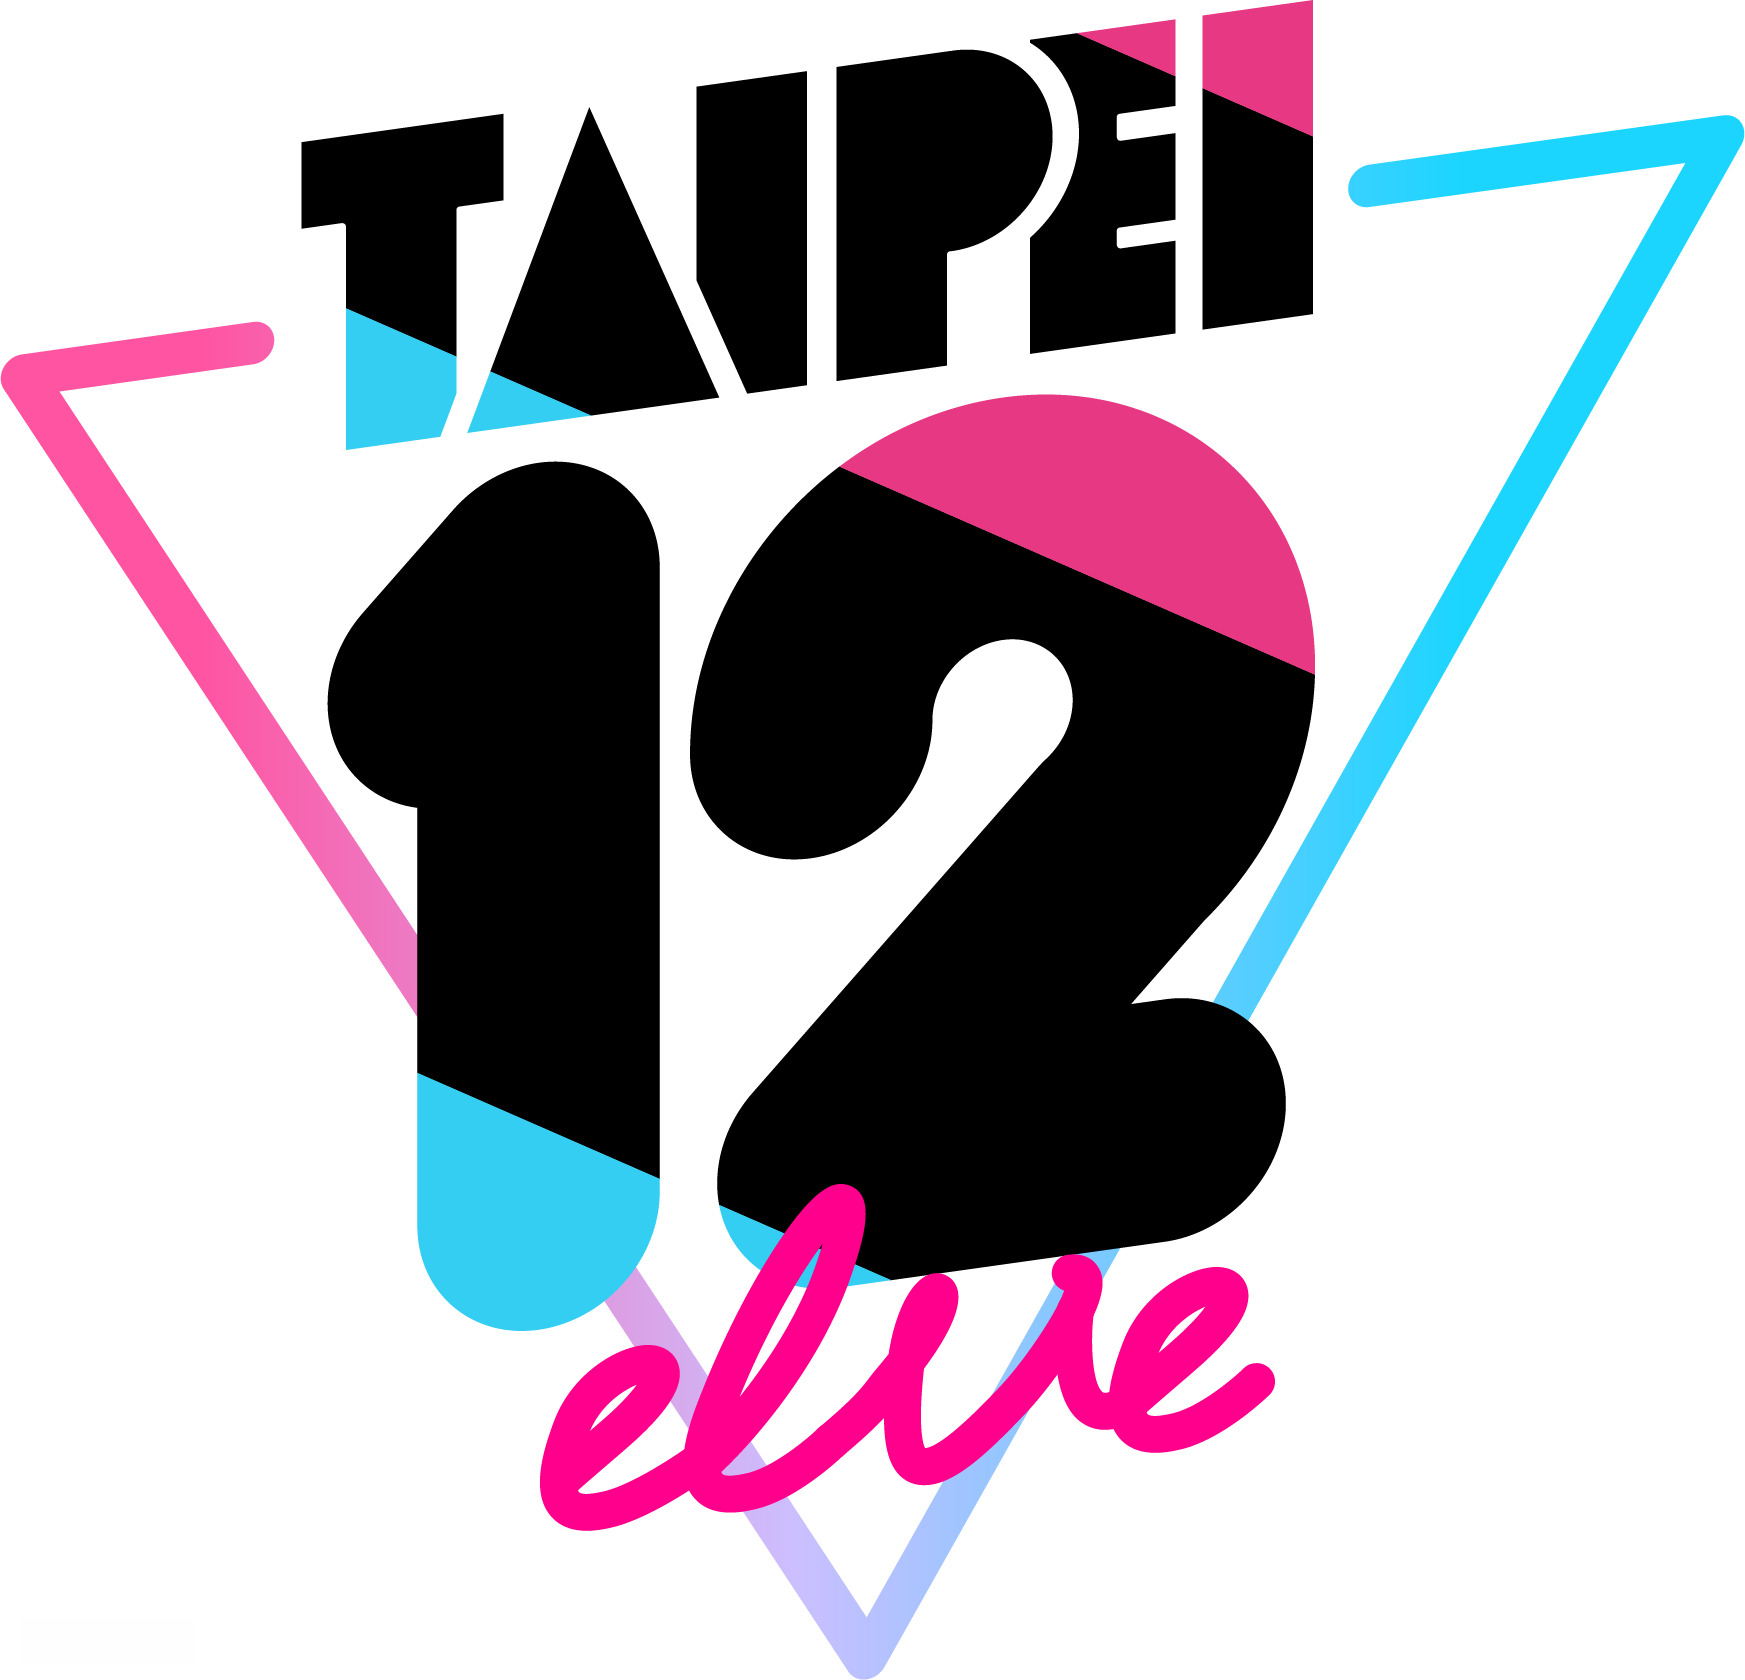 圖1. 聽見台北的聲音！台北12行政區Vidol團體《TAIPEI12elve》正式曝光